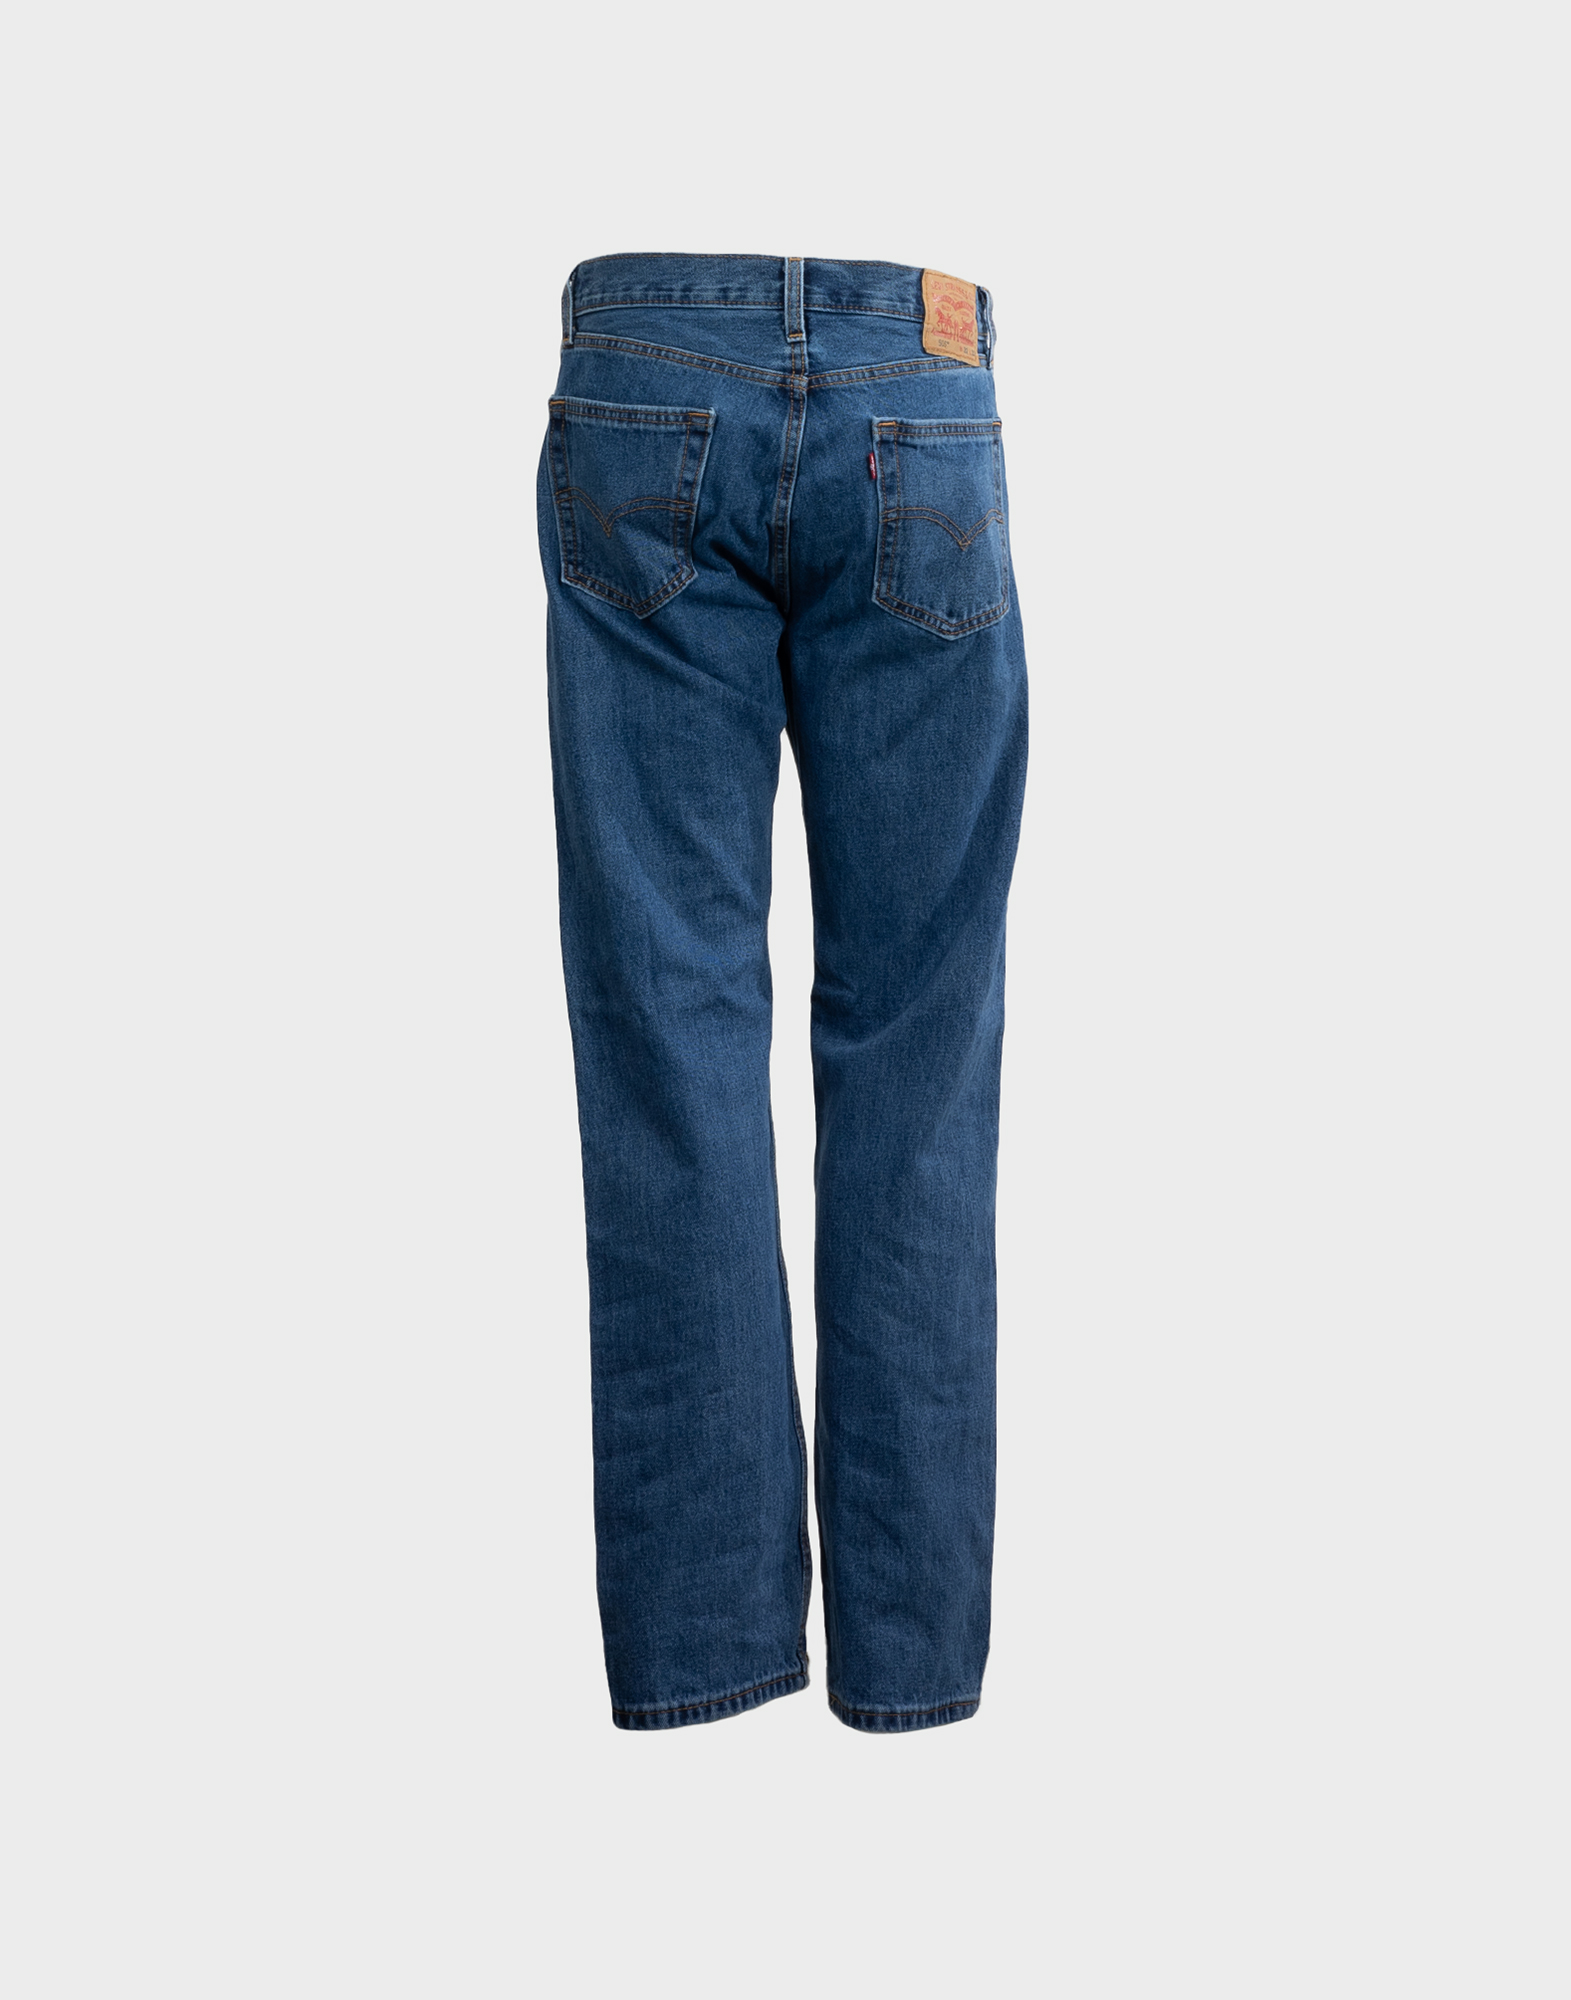 Levi's men's jeans pants blue color model 505, button closure